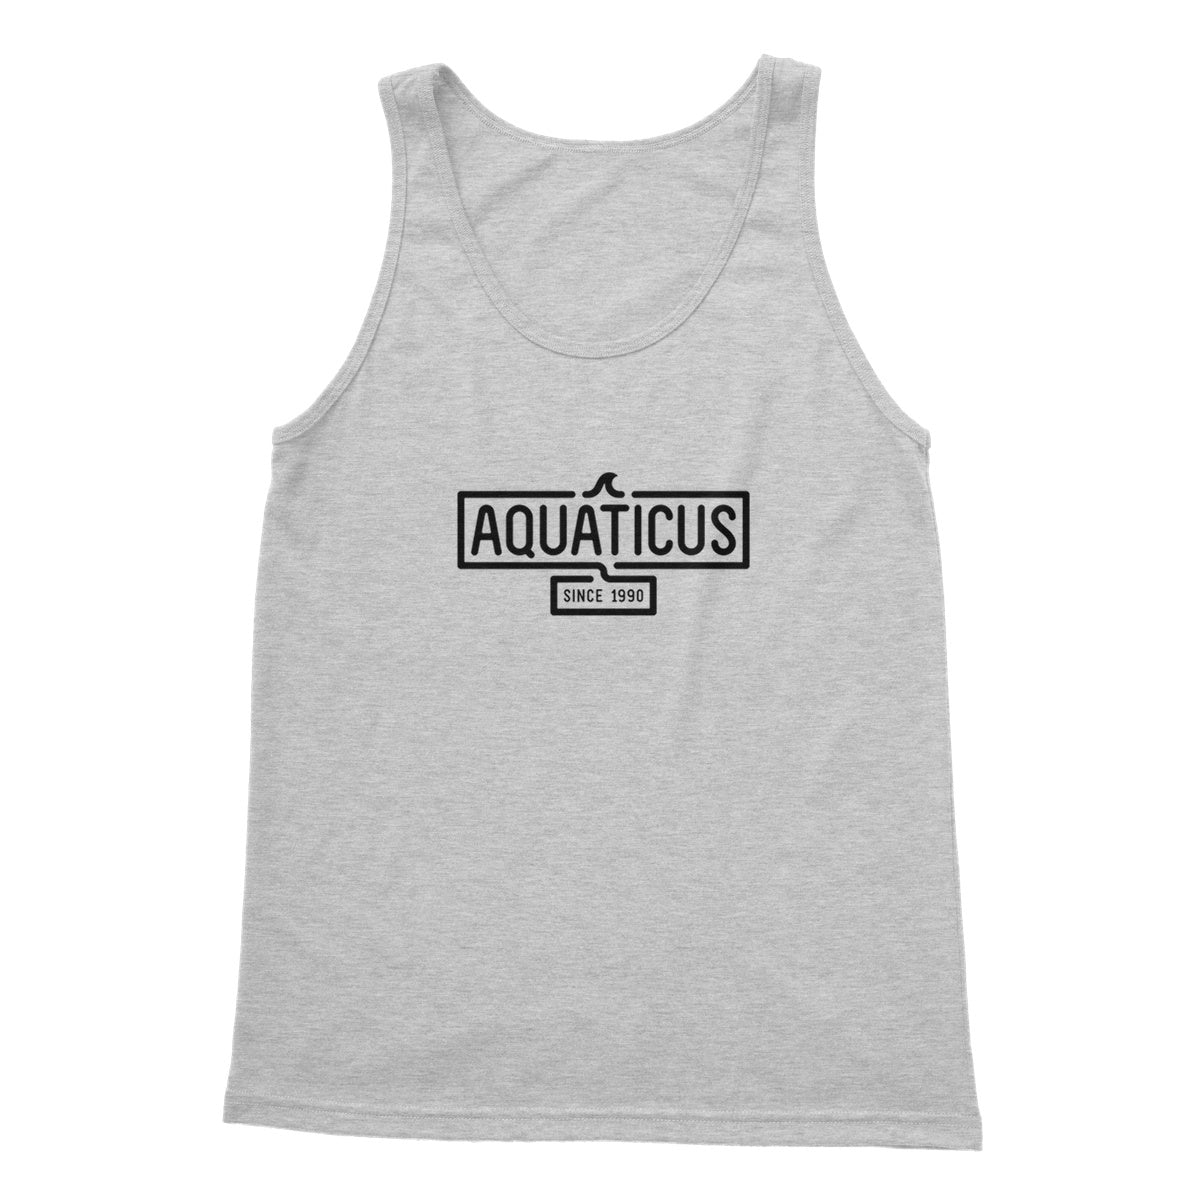 AQUA - 01- Aquaticus - Softstyle Tank Top